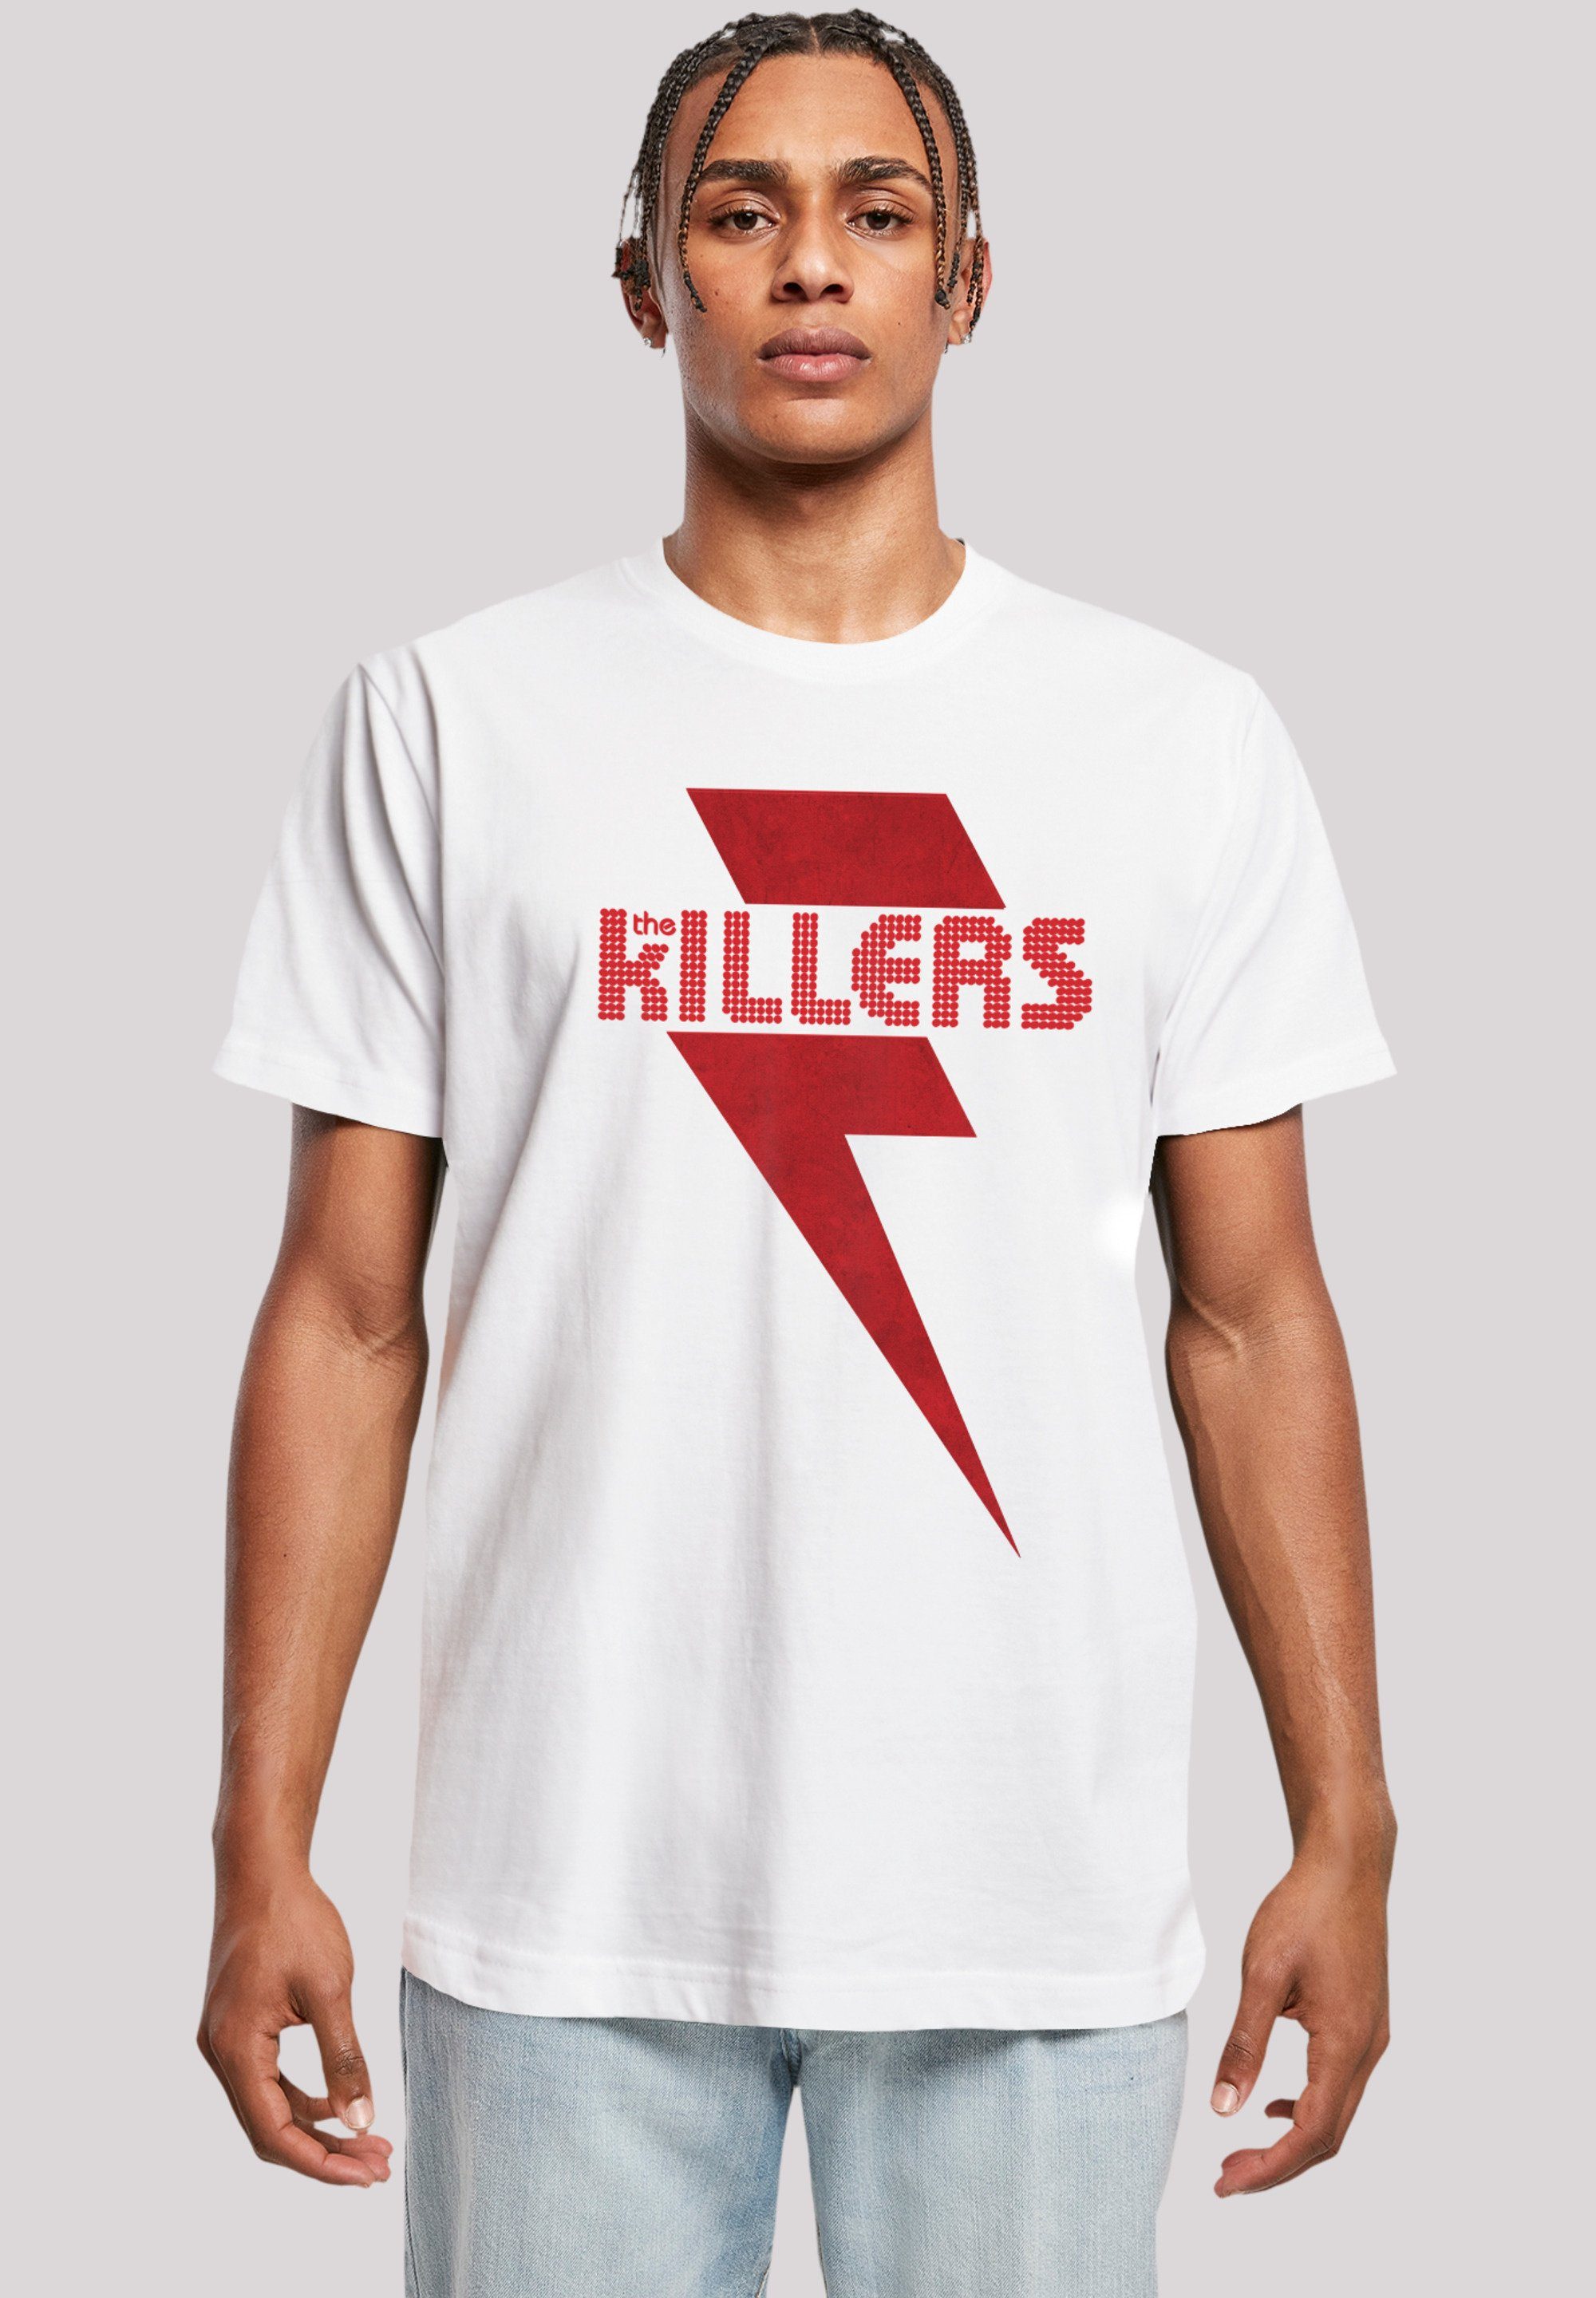 Bolt Print Killers The Red T-Shirt F4NT4STIC weiß